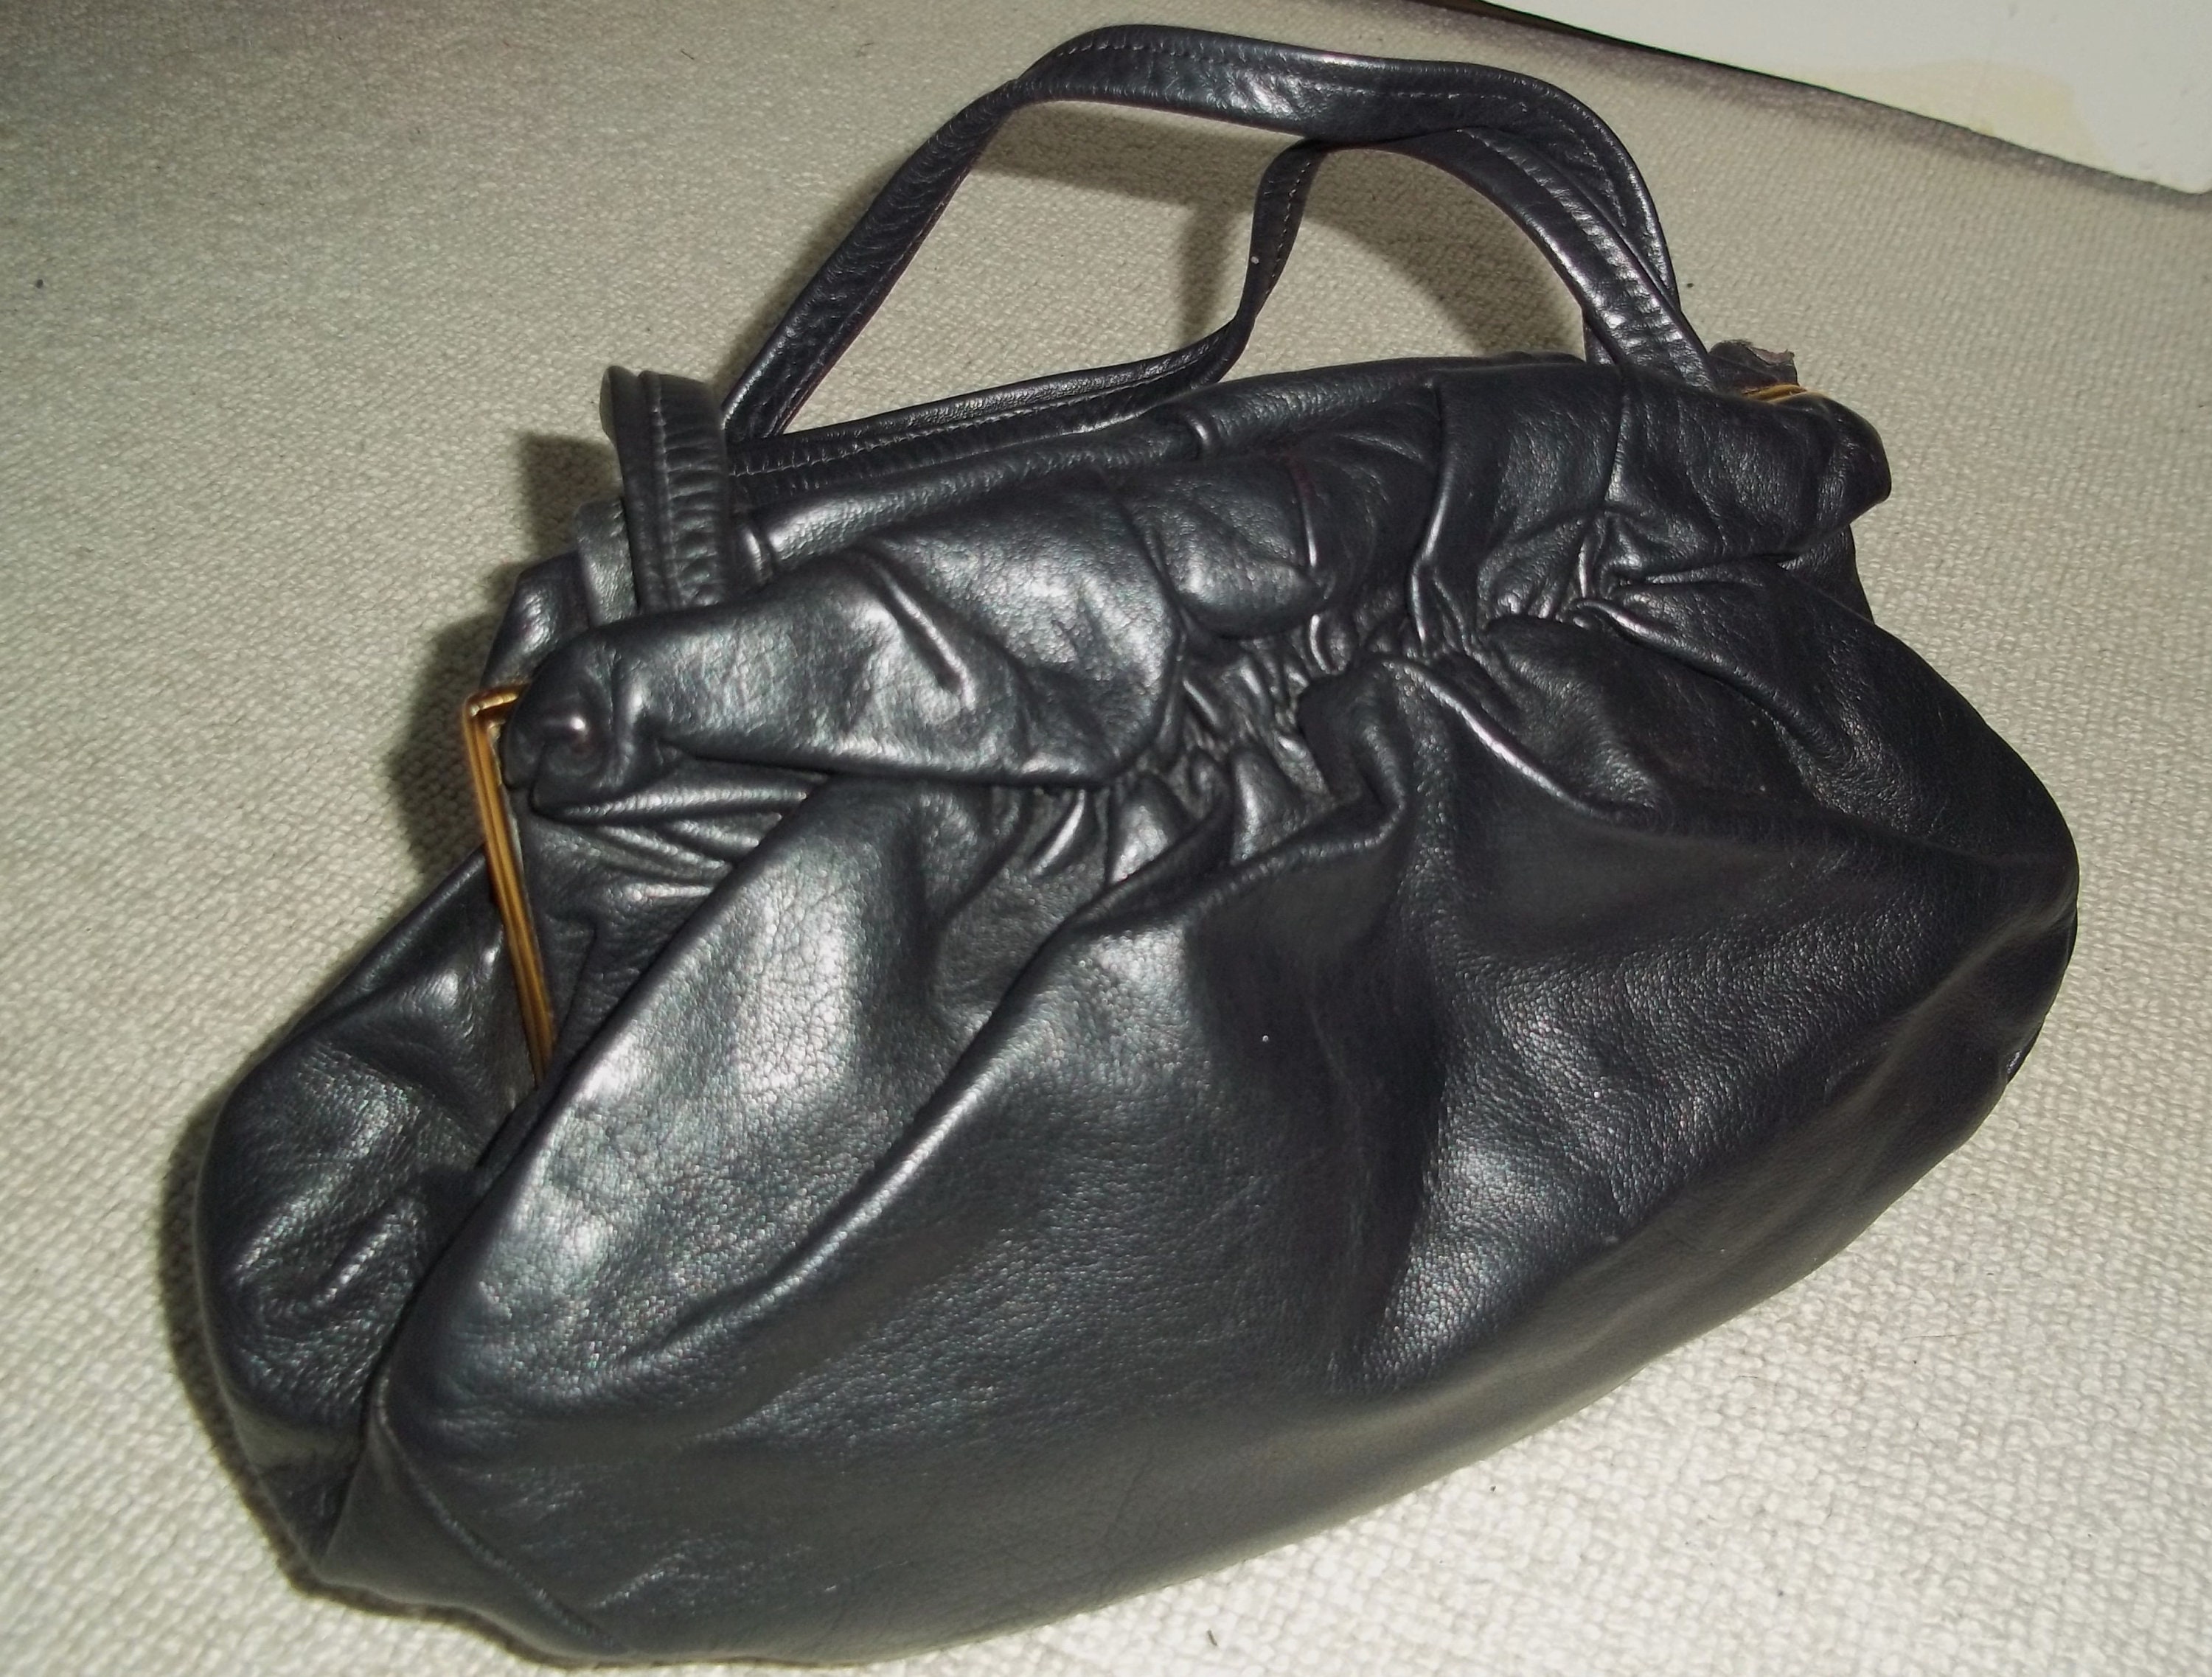  TOPTIE Adjustable Shoulder Bag Strap, PU Leather